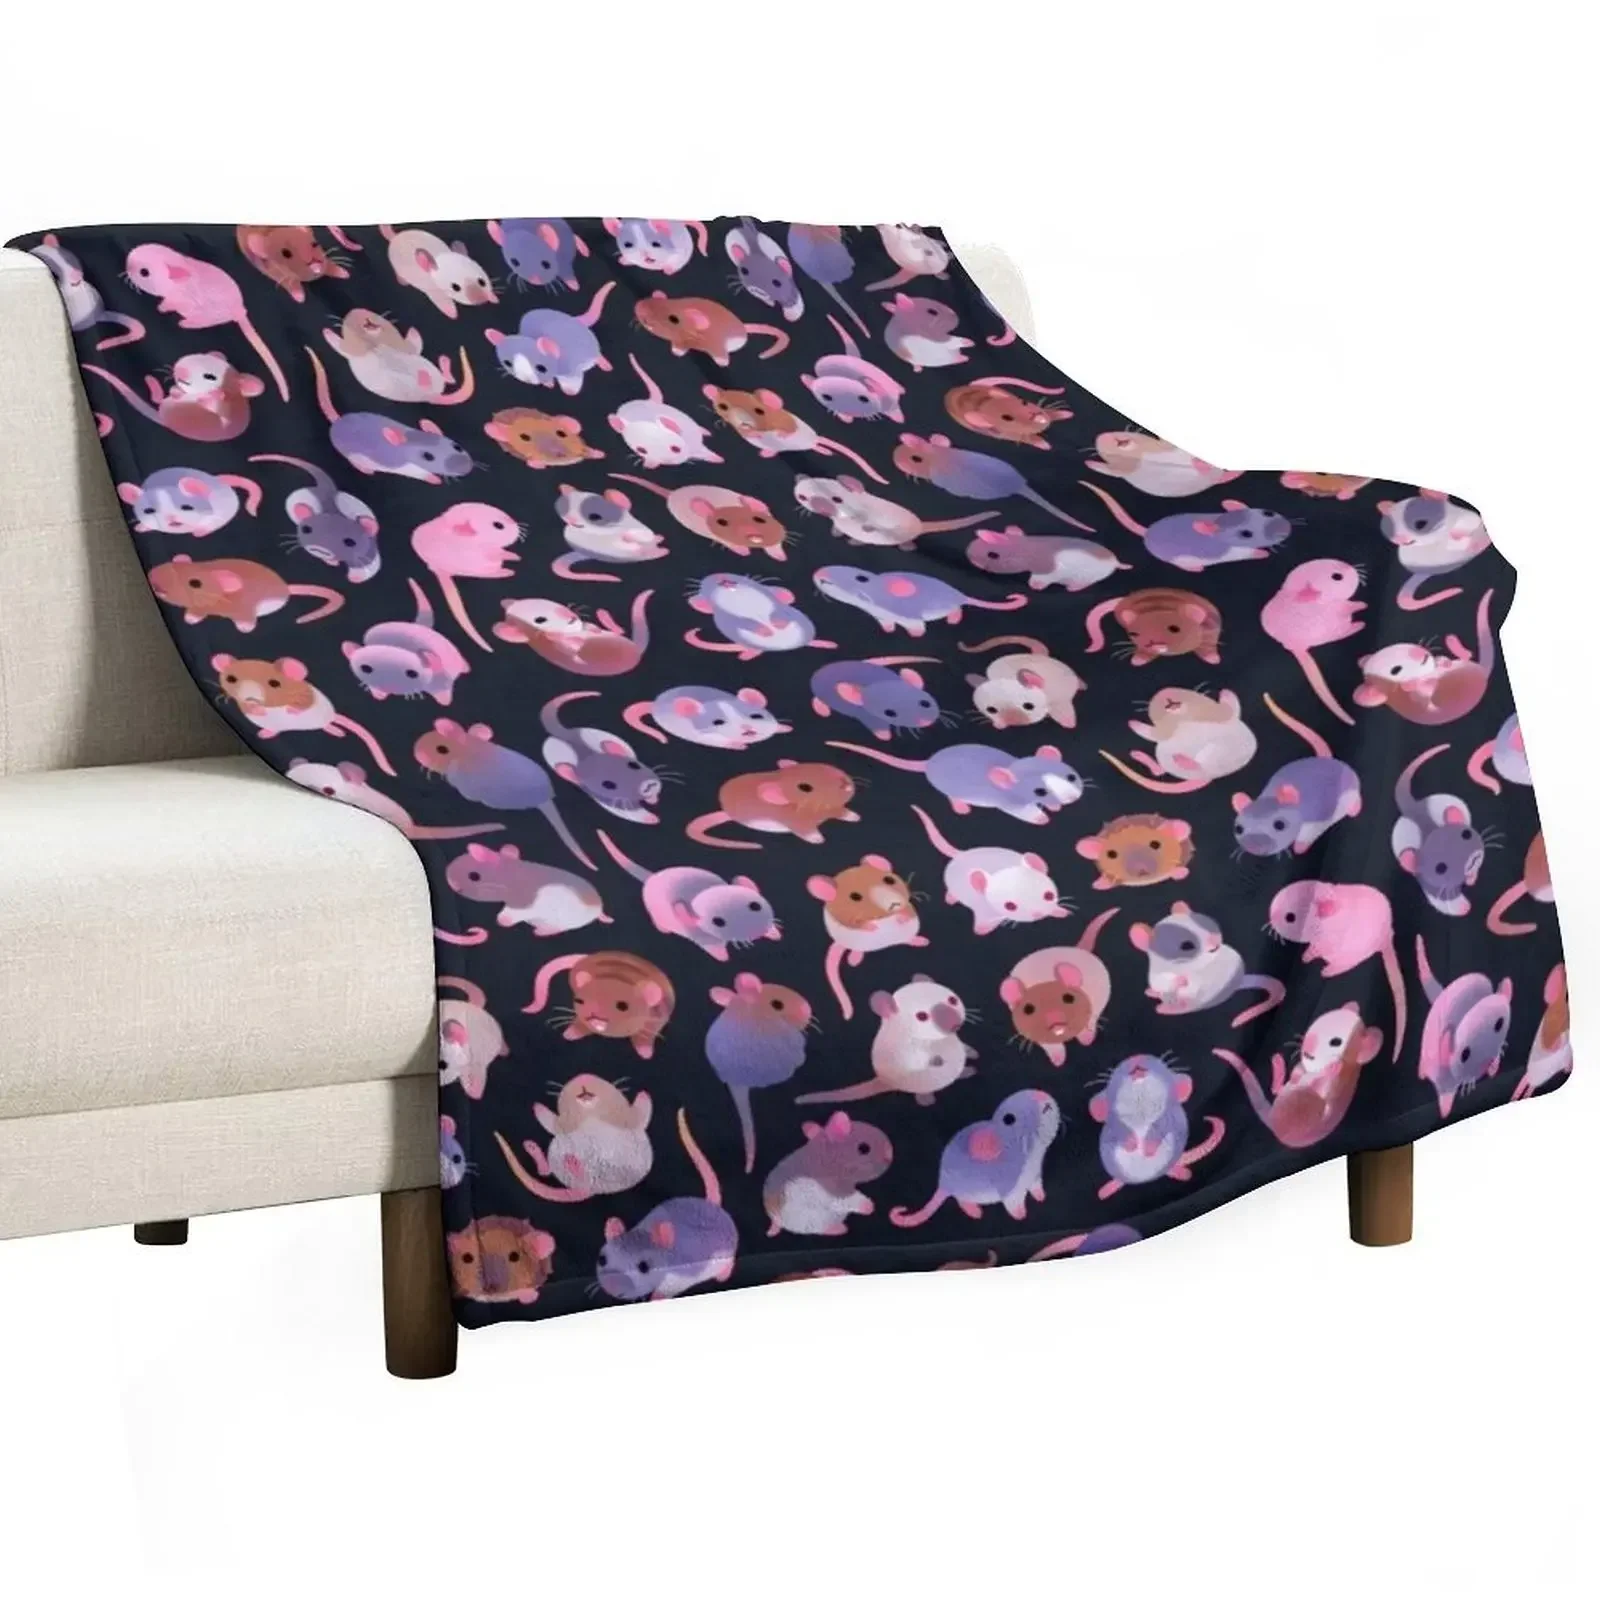 

Необычное крысино-темное пледовое одеяло, мягкие декоративные диваны в клетку, постельное белье, одеяла